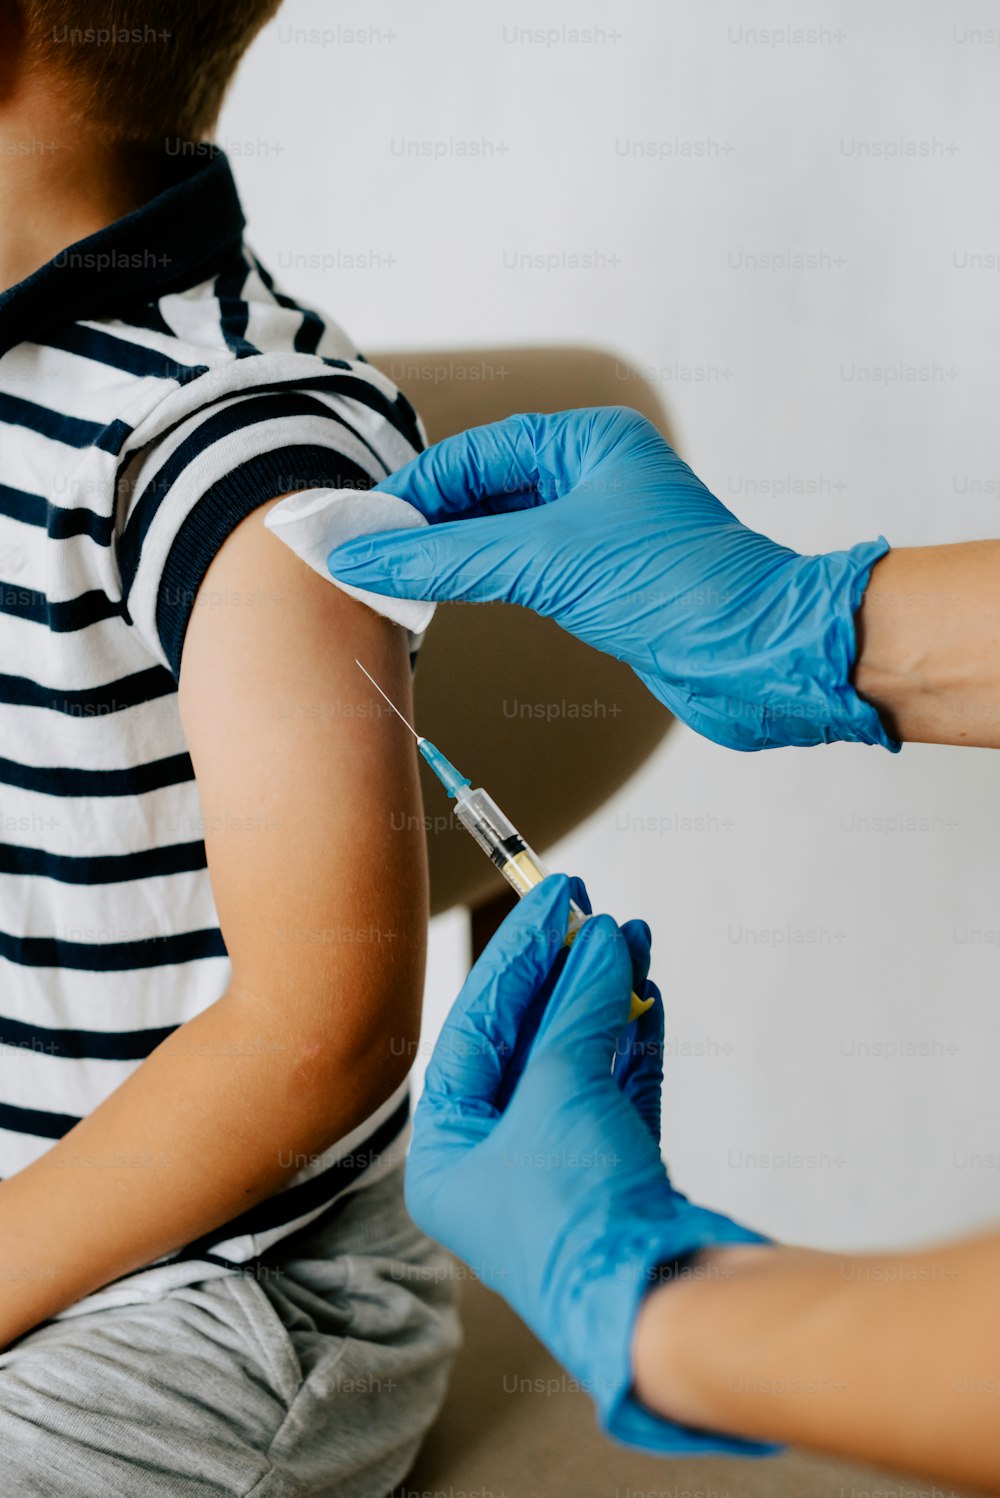 a boy getting a vaccium vaccium vaccium vaccium